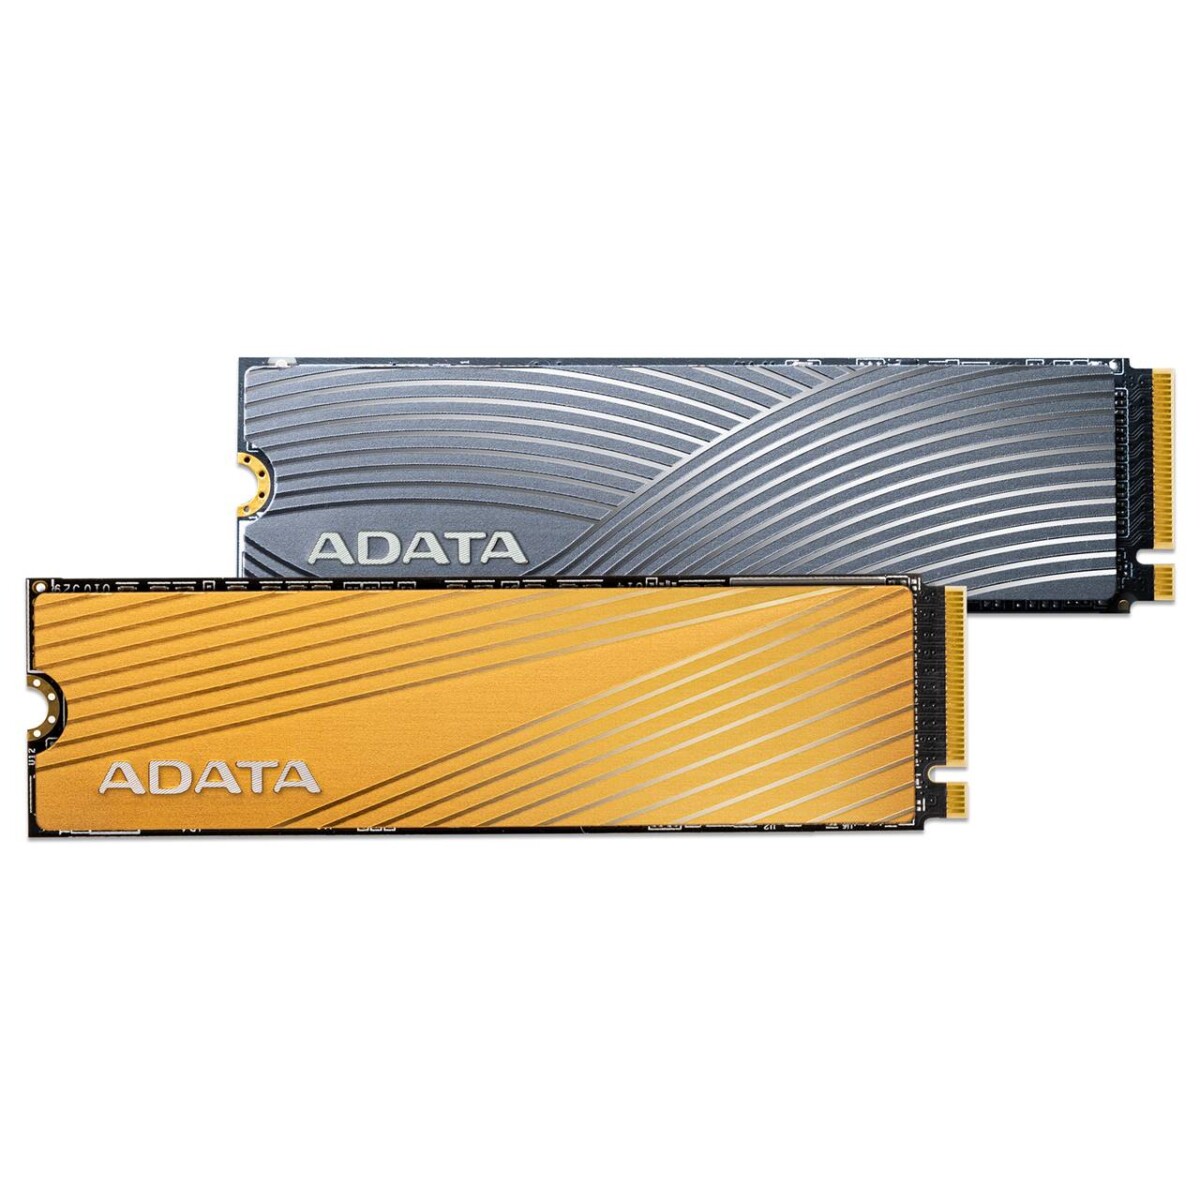 ADATA, İki Yeni M2 SSD Modelini Tanıttı! 